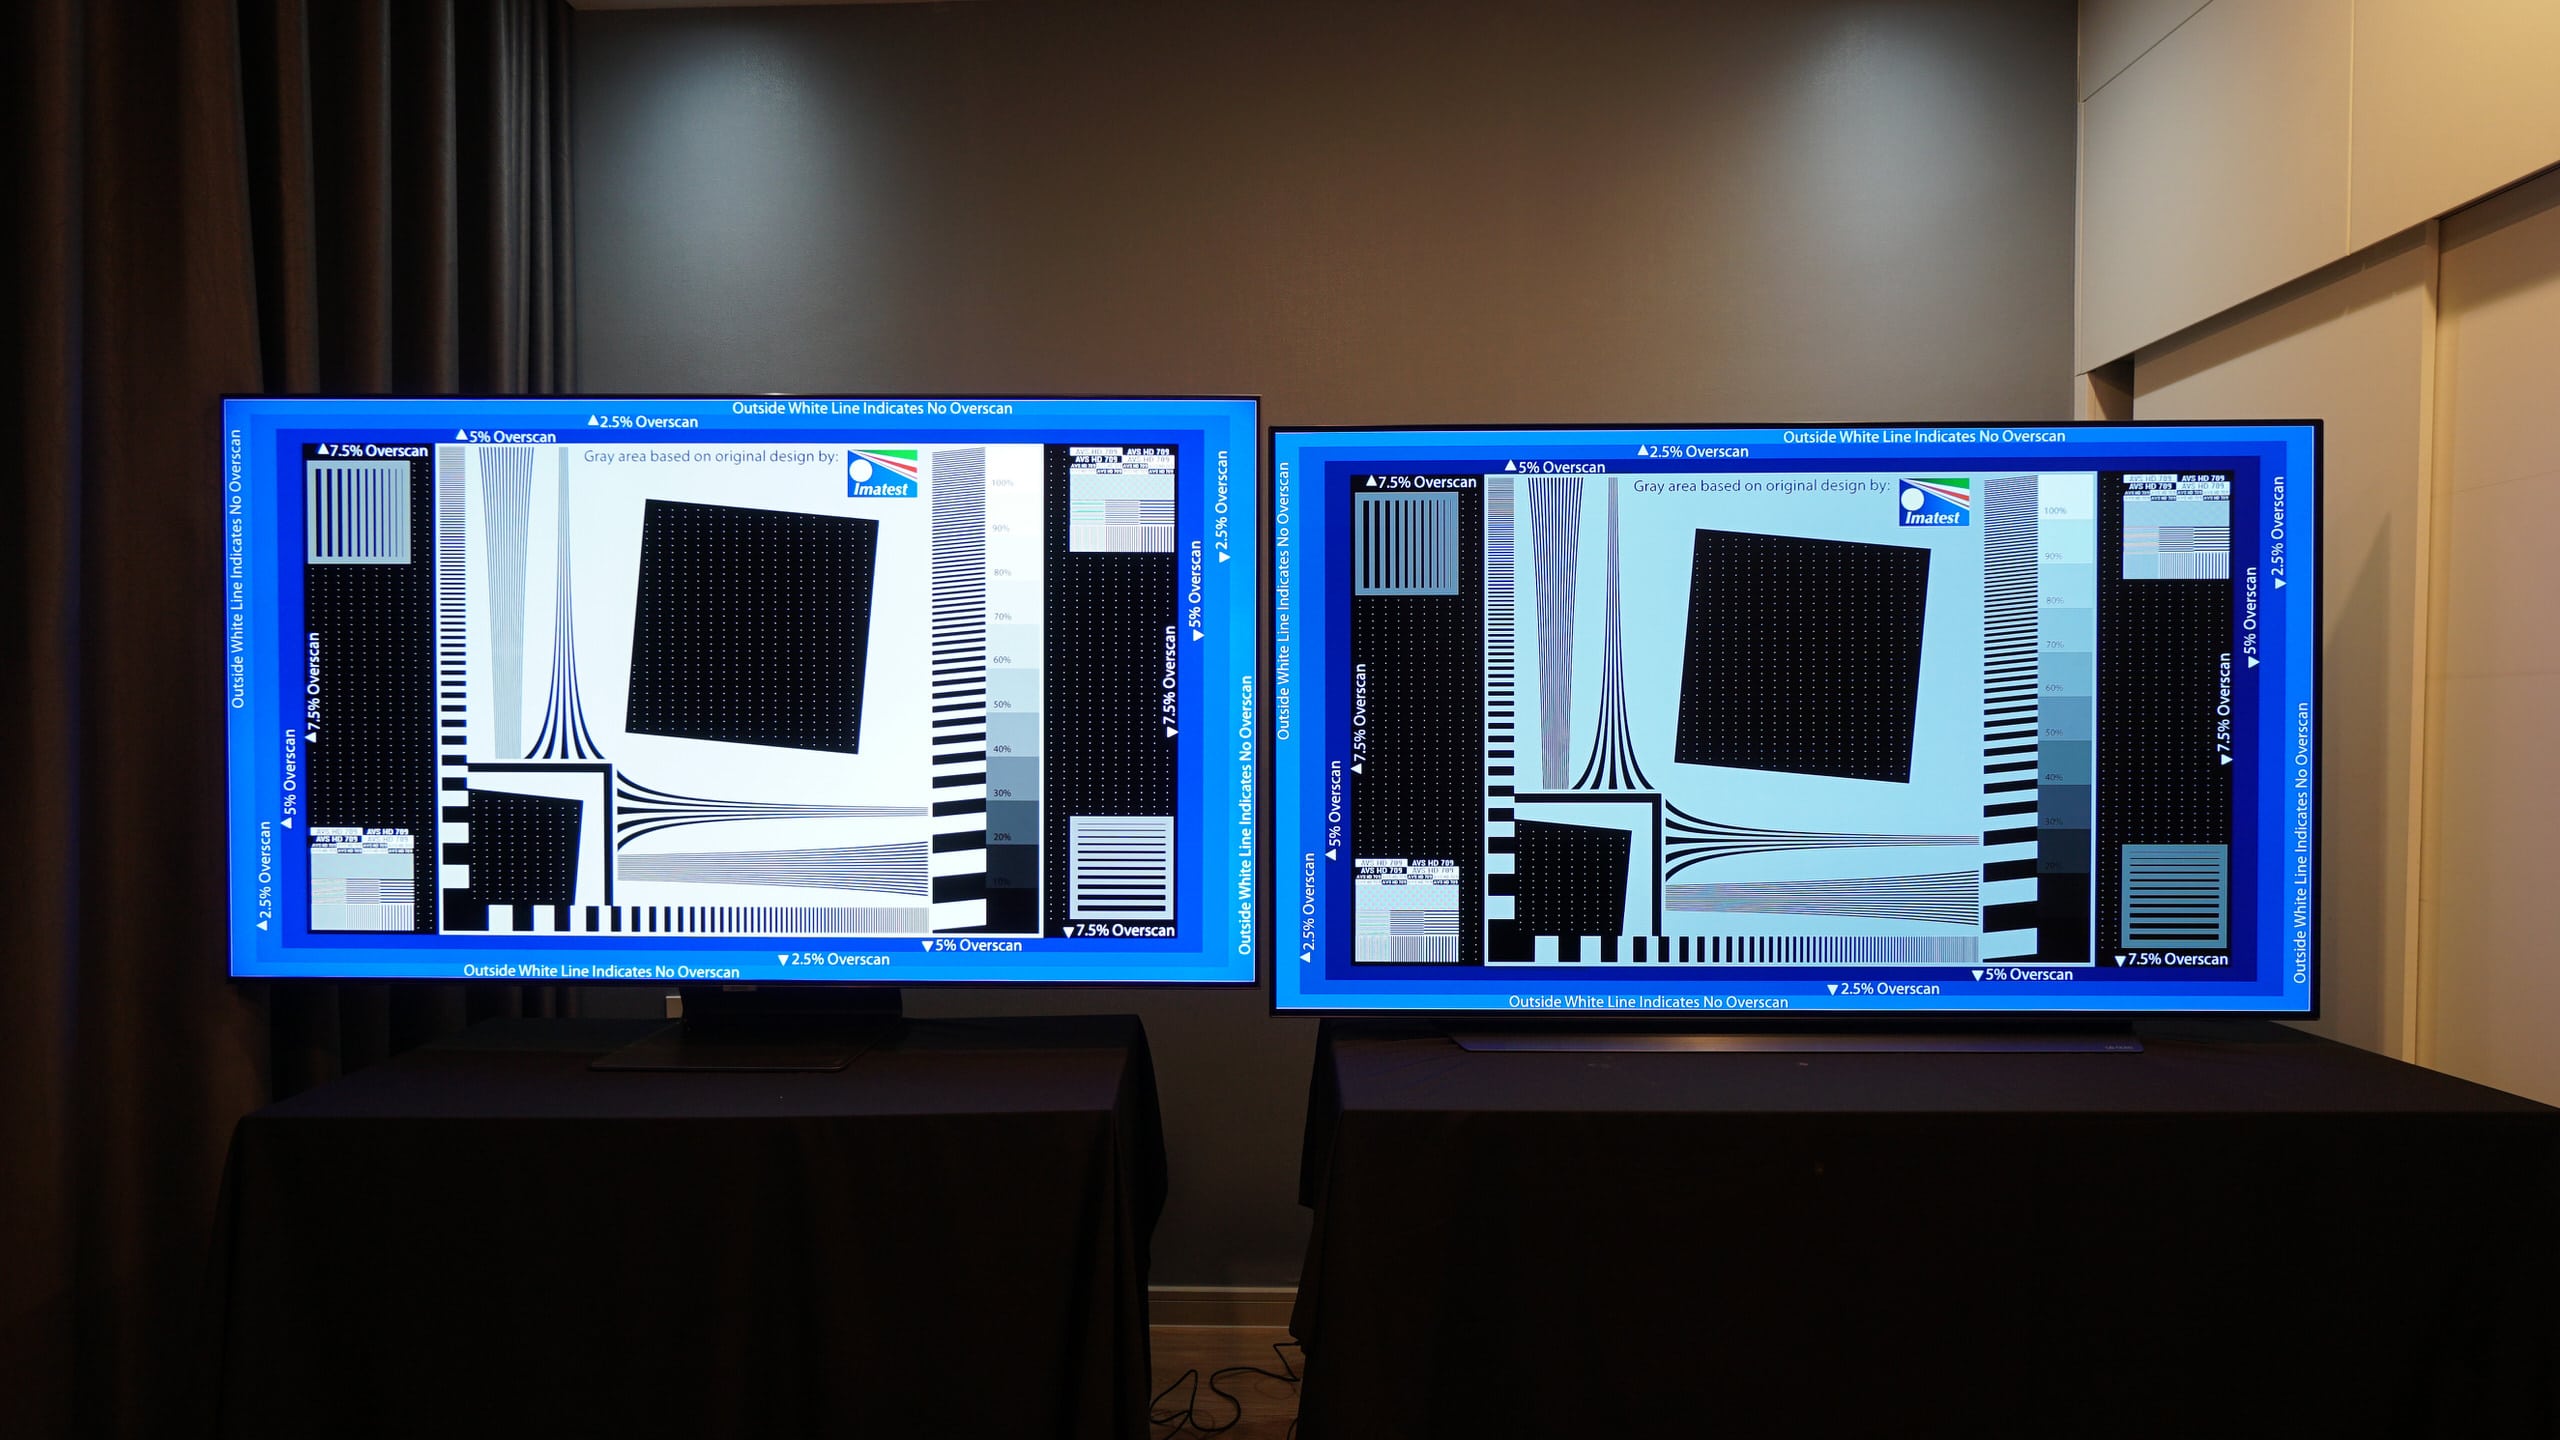 So sánh TV QLED và TV OLED: Chất lượng hình ảnh vượt trội của QLED đem đến trải nghiệm tốt nhất